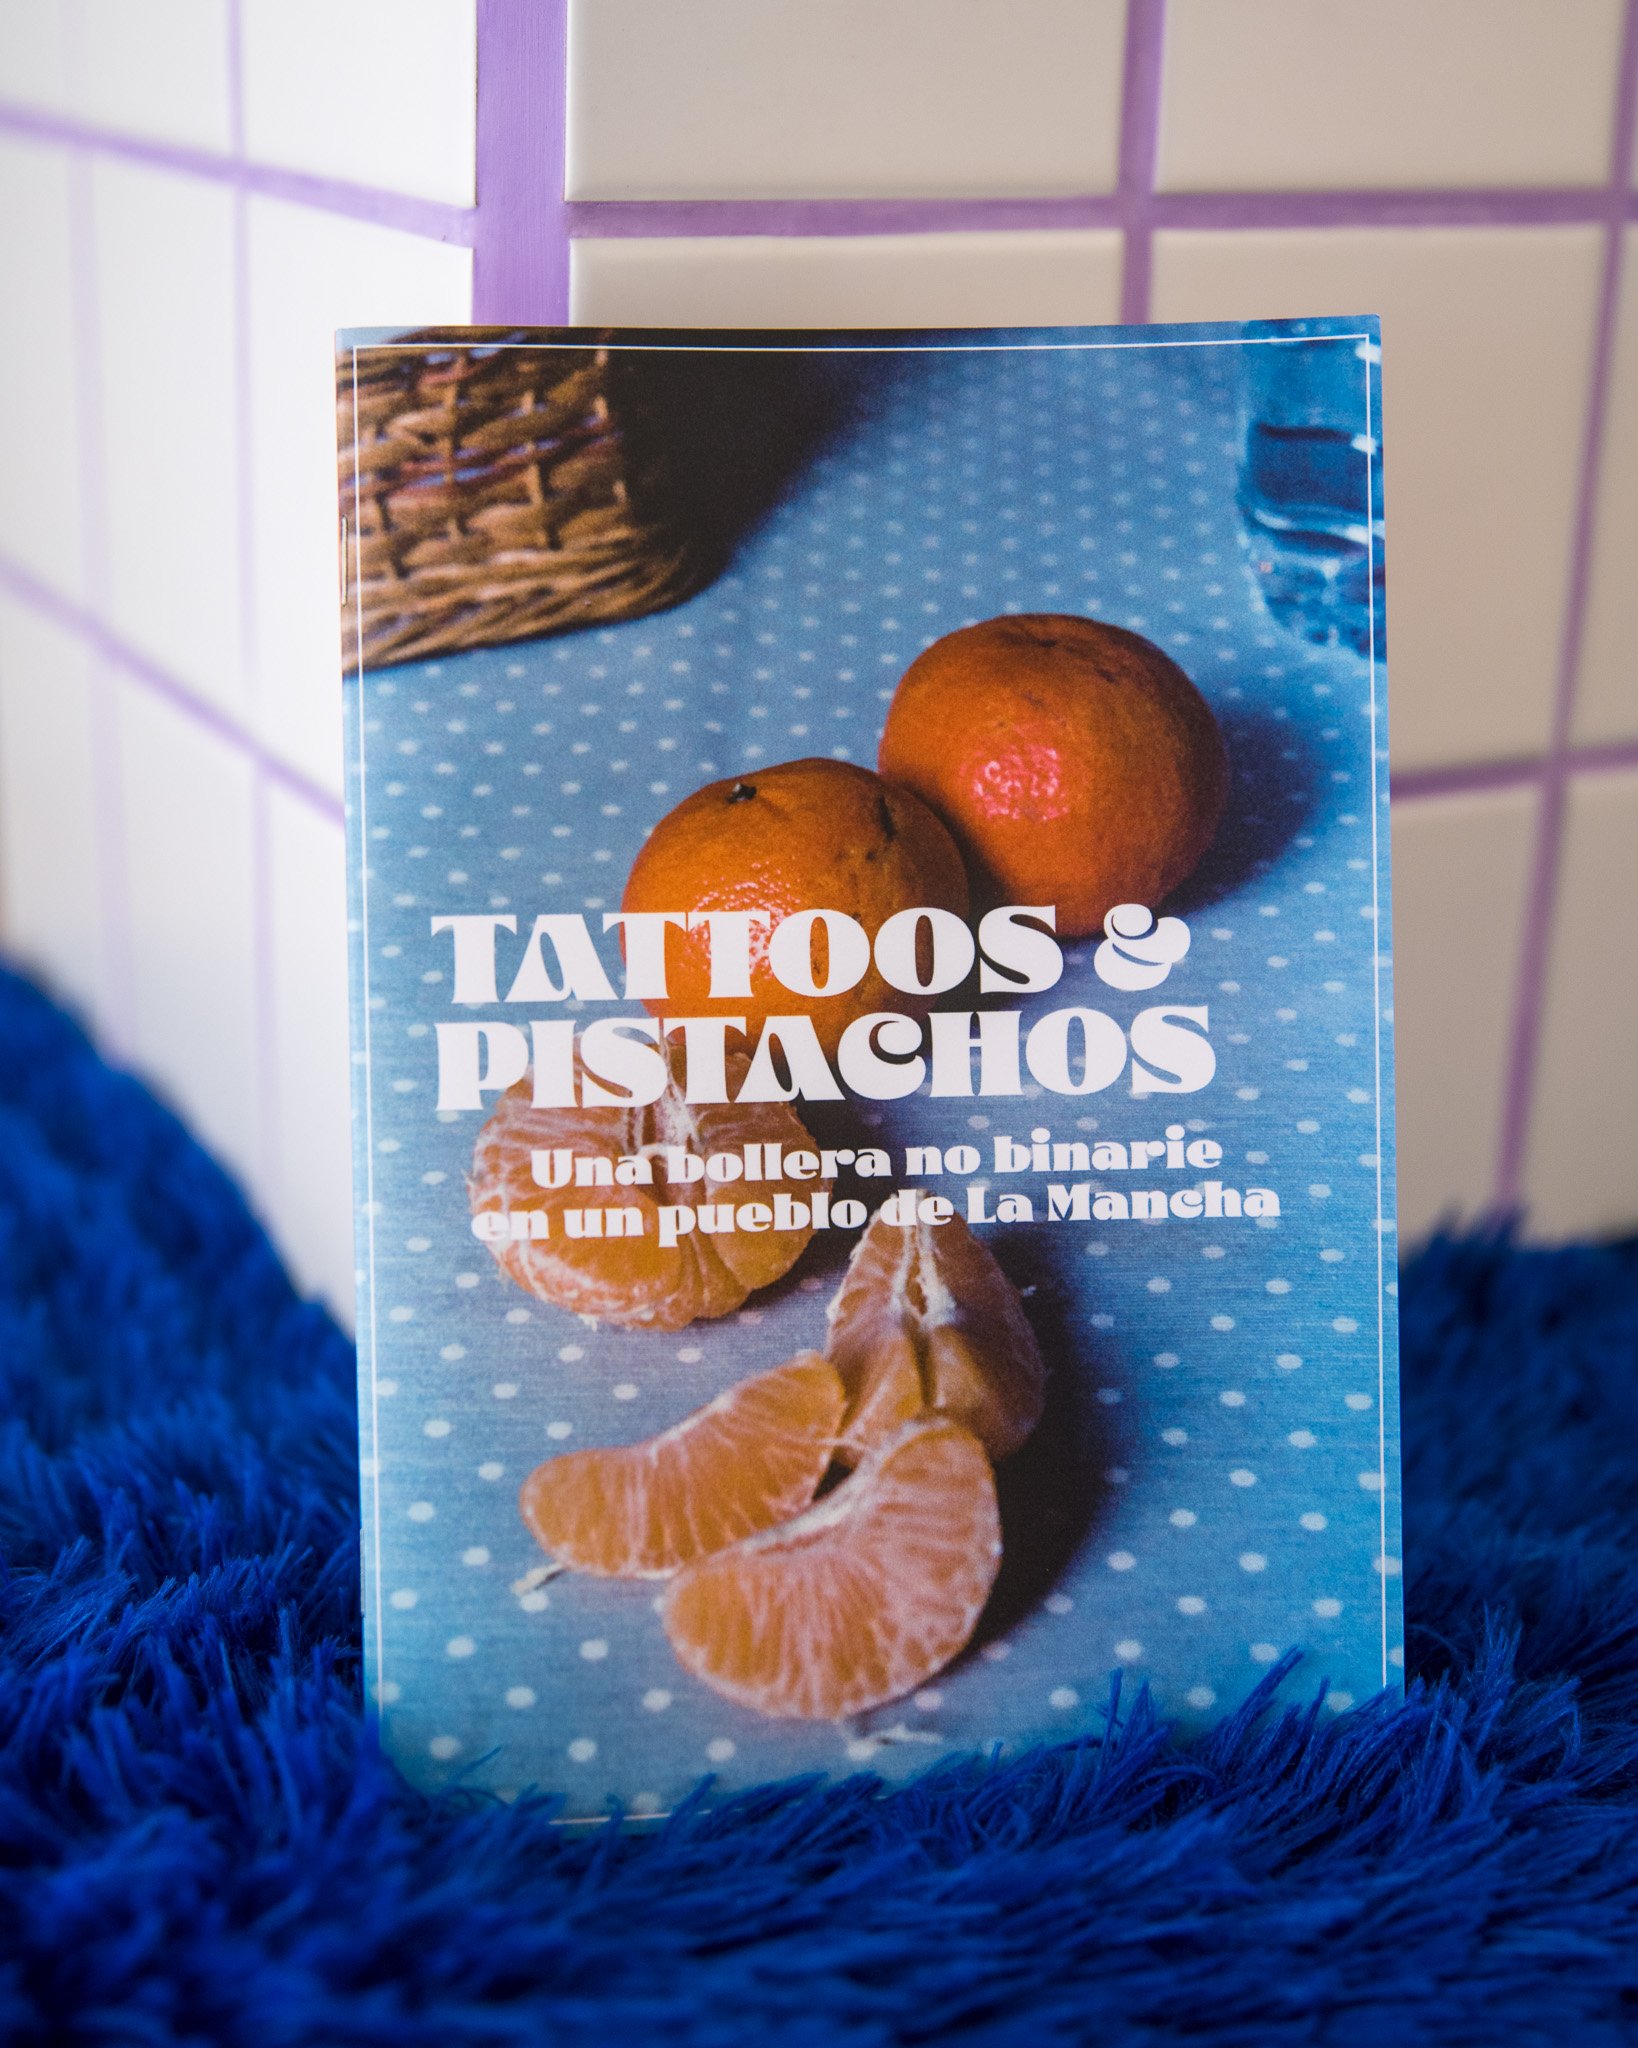 Image of Fanzine tattoos & pistachos